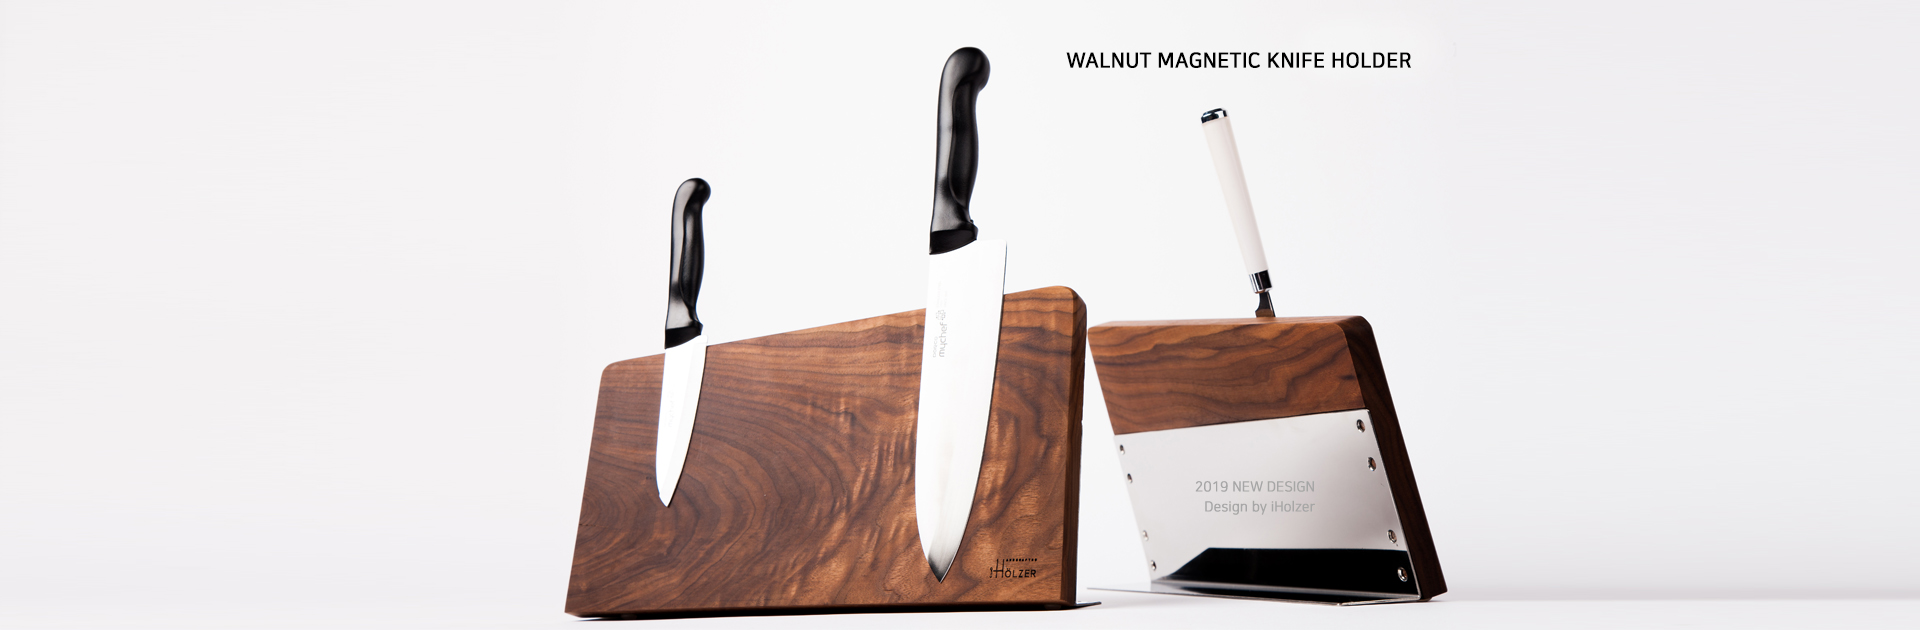 WALNUT MAGNETIC KNIFE HOLDER